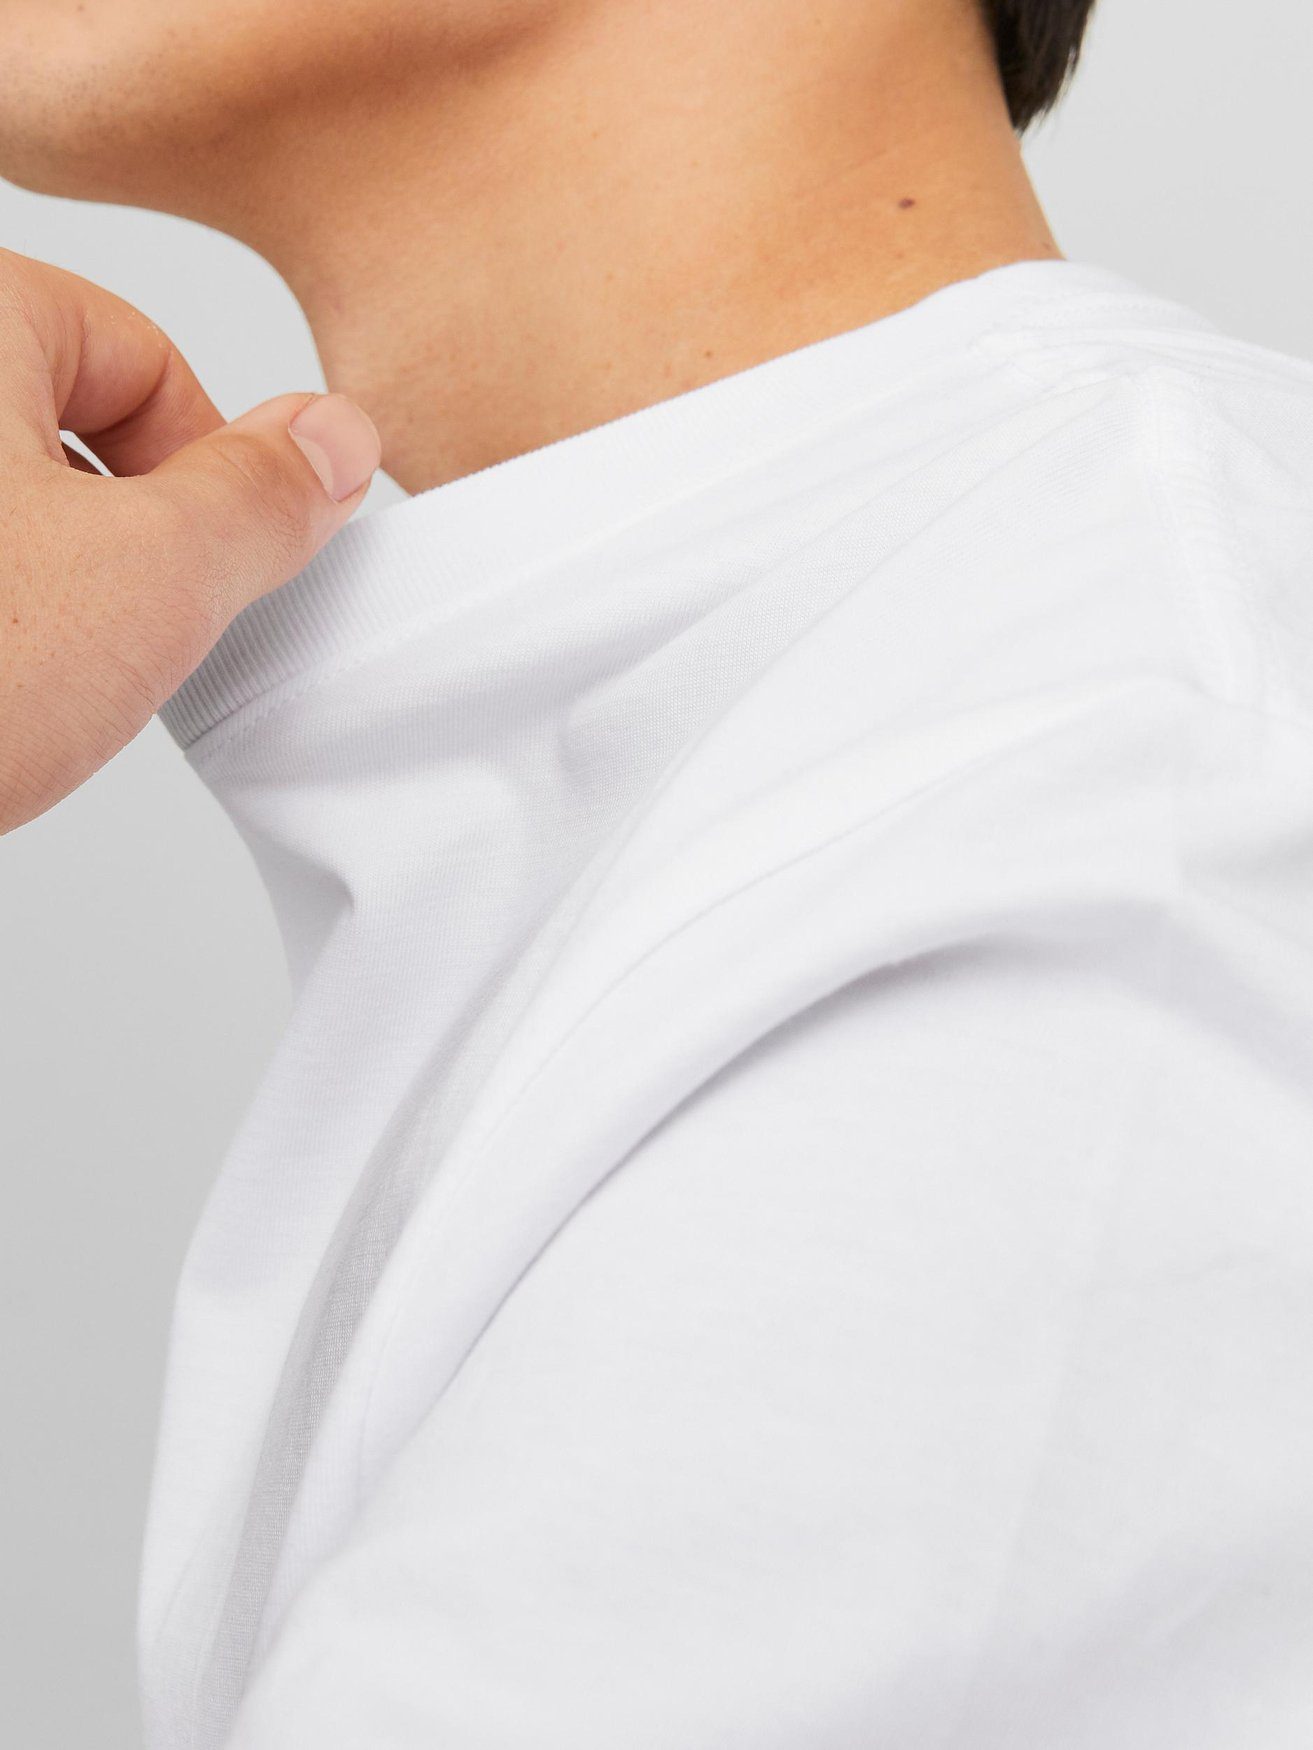 Jack & Jones T-Shirt Weiß-Beige 2-er JORVESTERBRO 6114 Logo Kurzarm (2-tlg) in Shirt Set T-Shirt